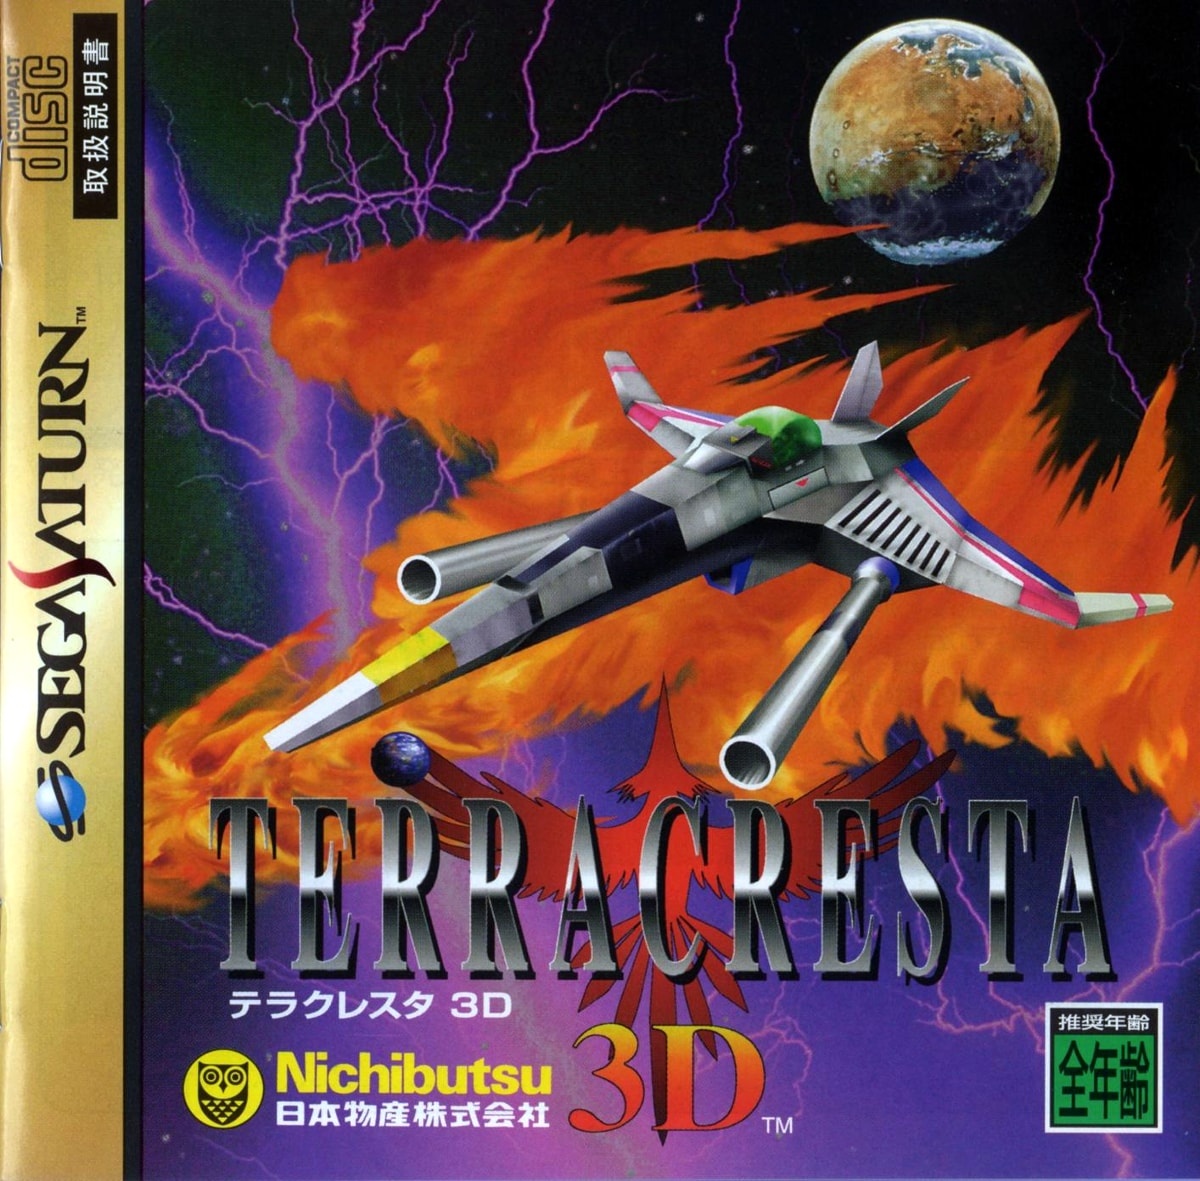 Capa do jogo Terra Cresta 3D